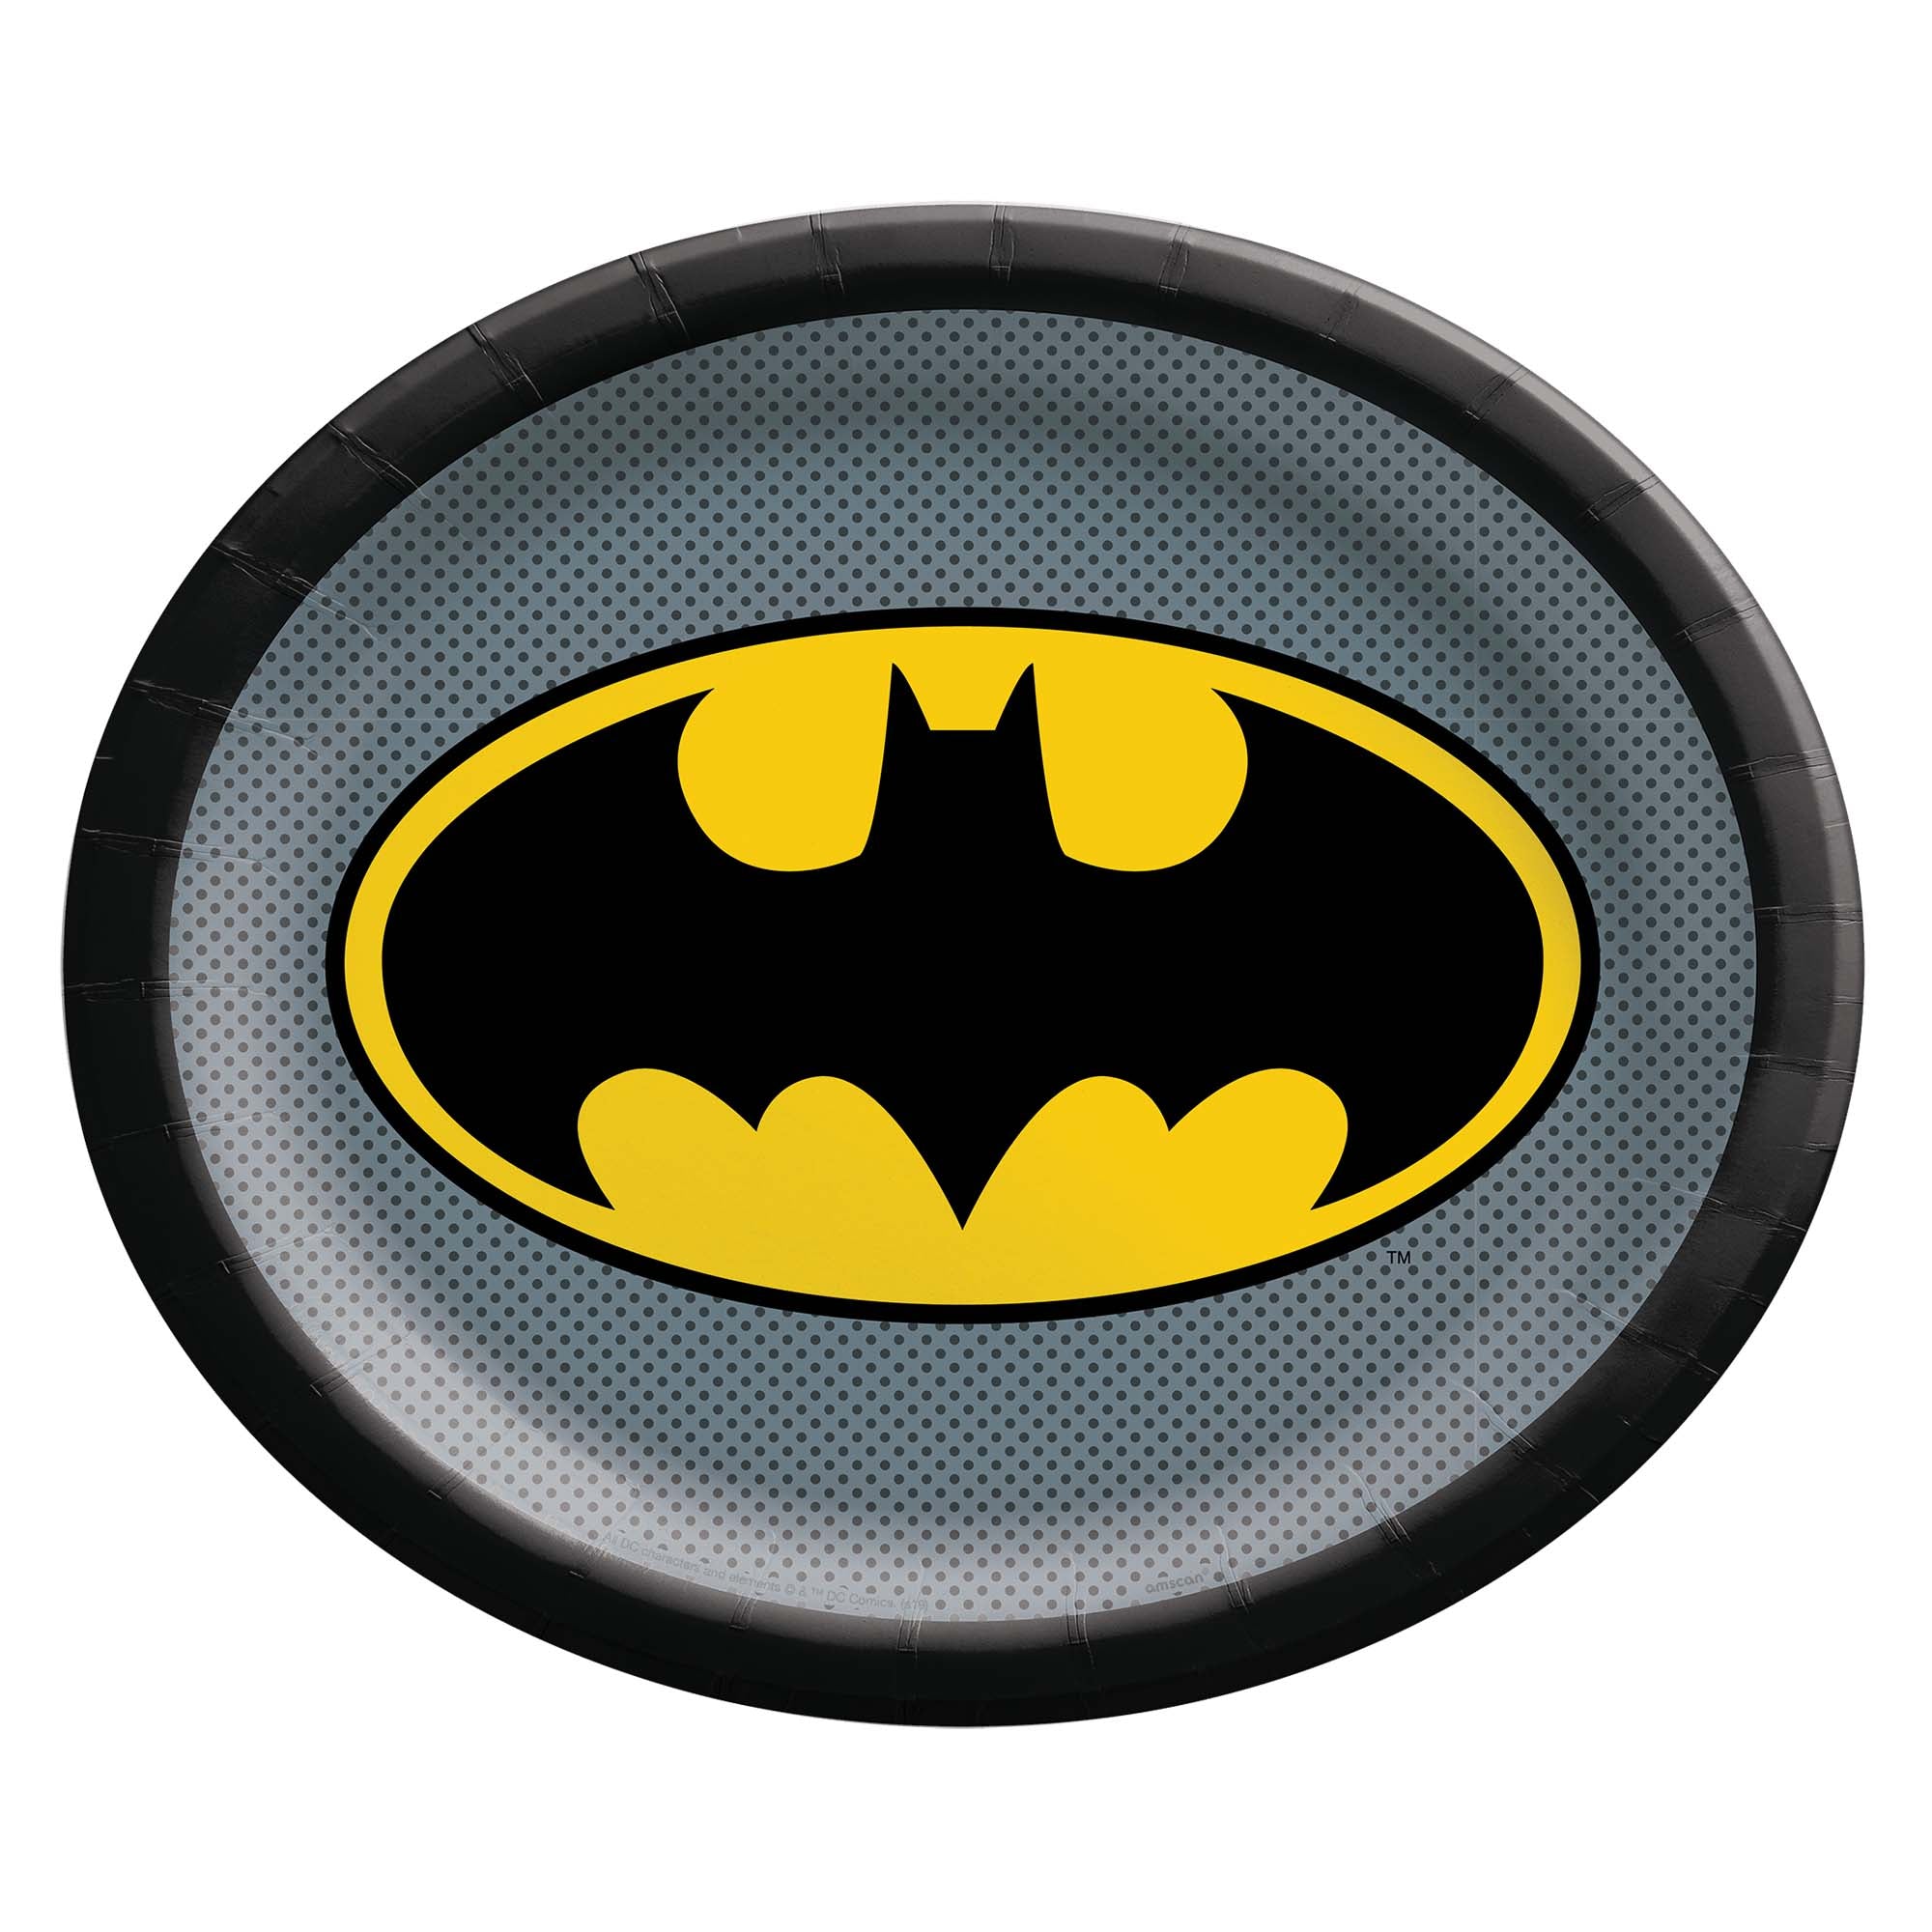 Batman™ Heroes Unite Oval 12" x 10" Plate Package of 8